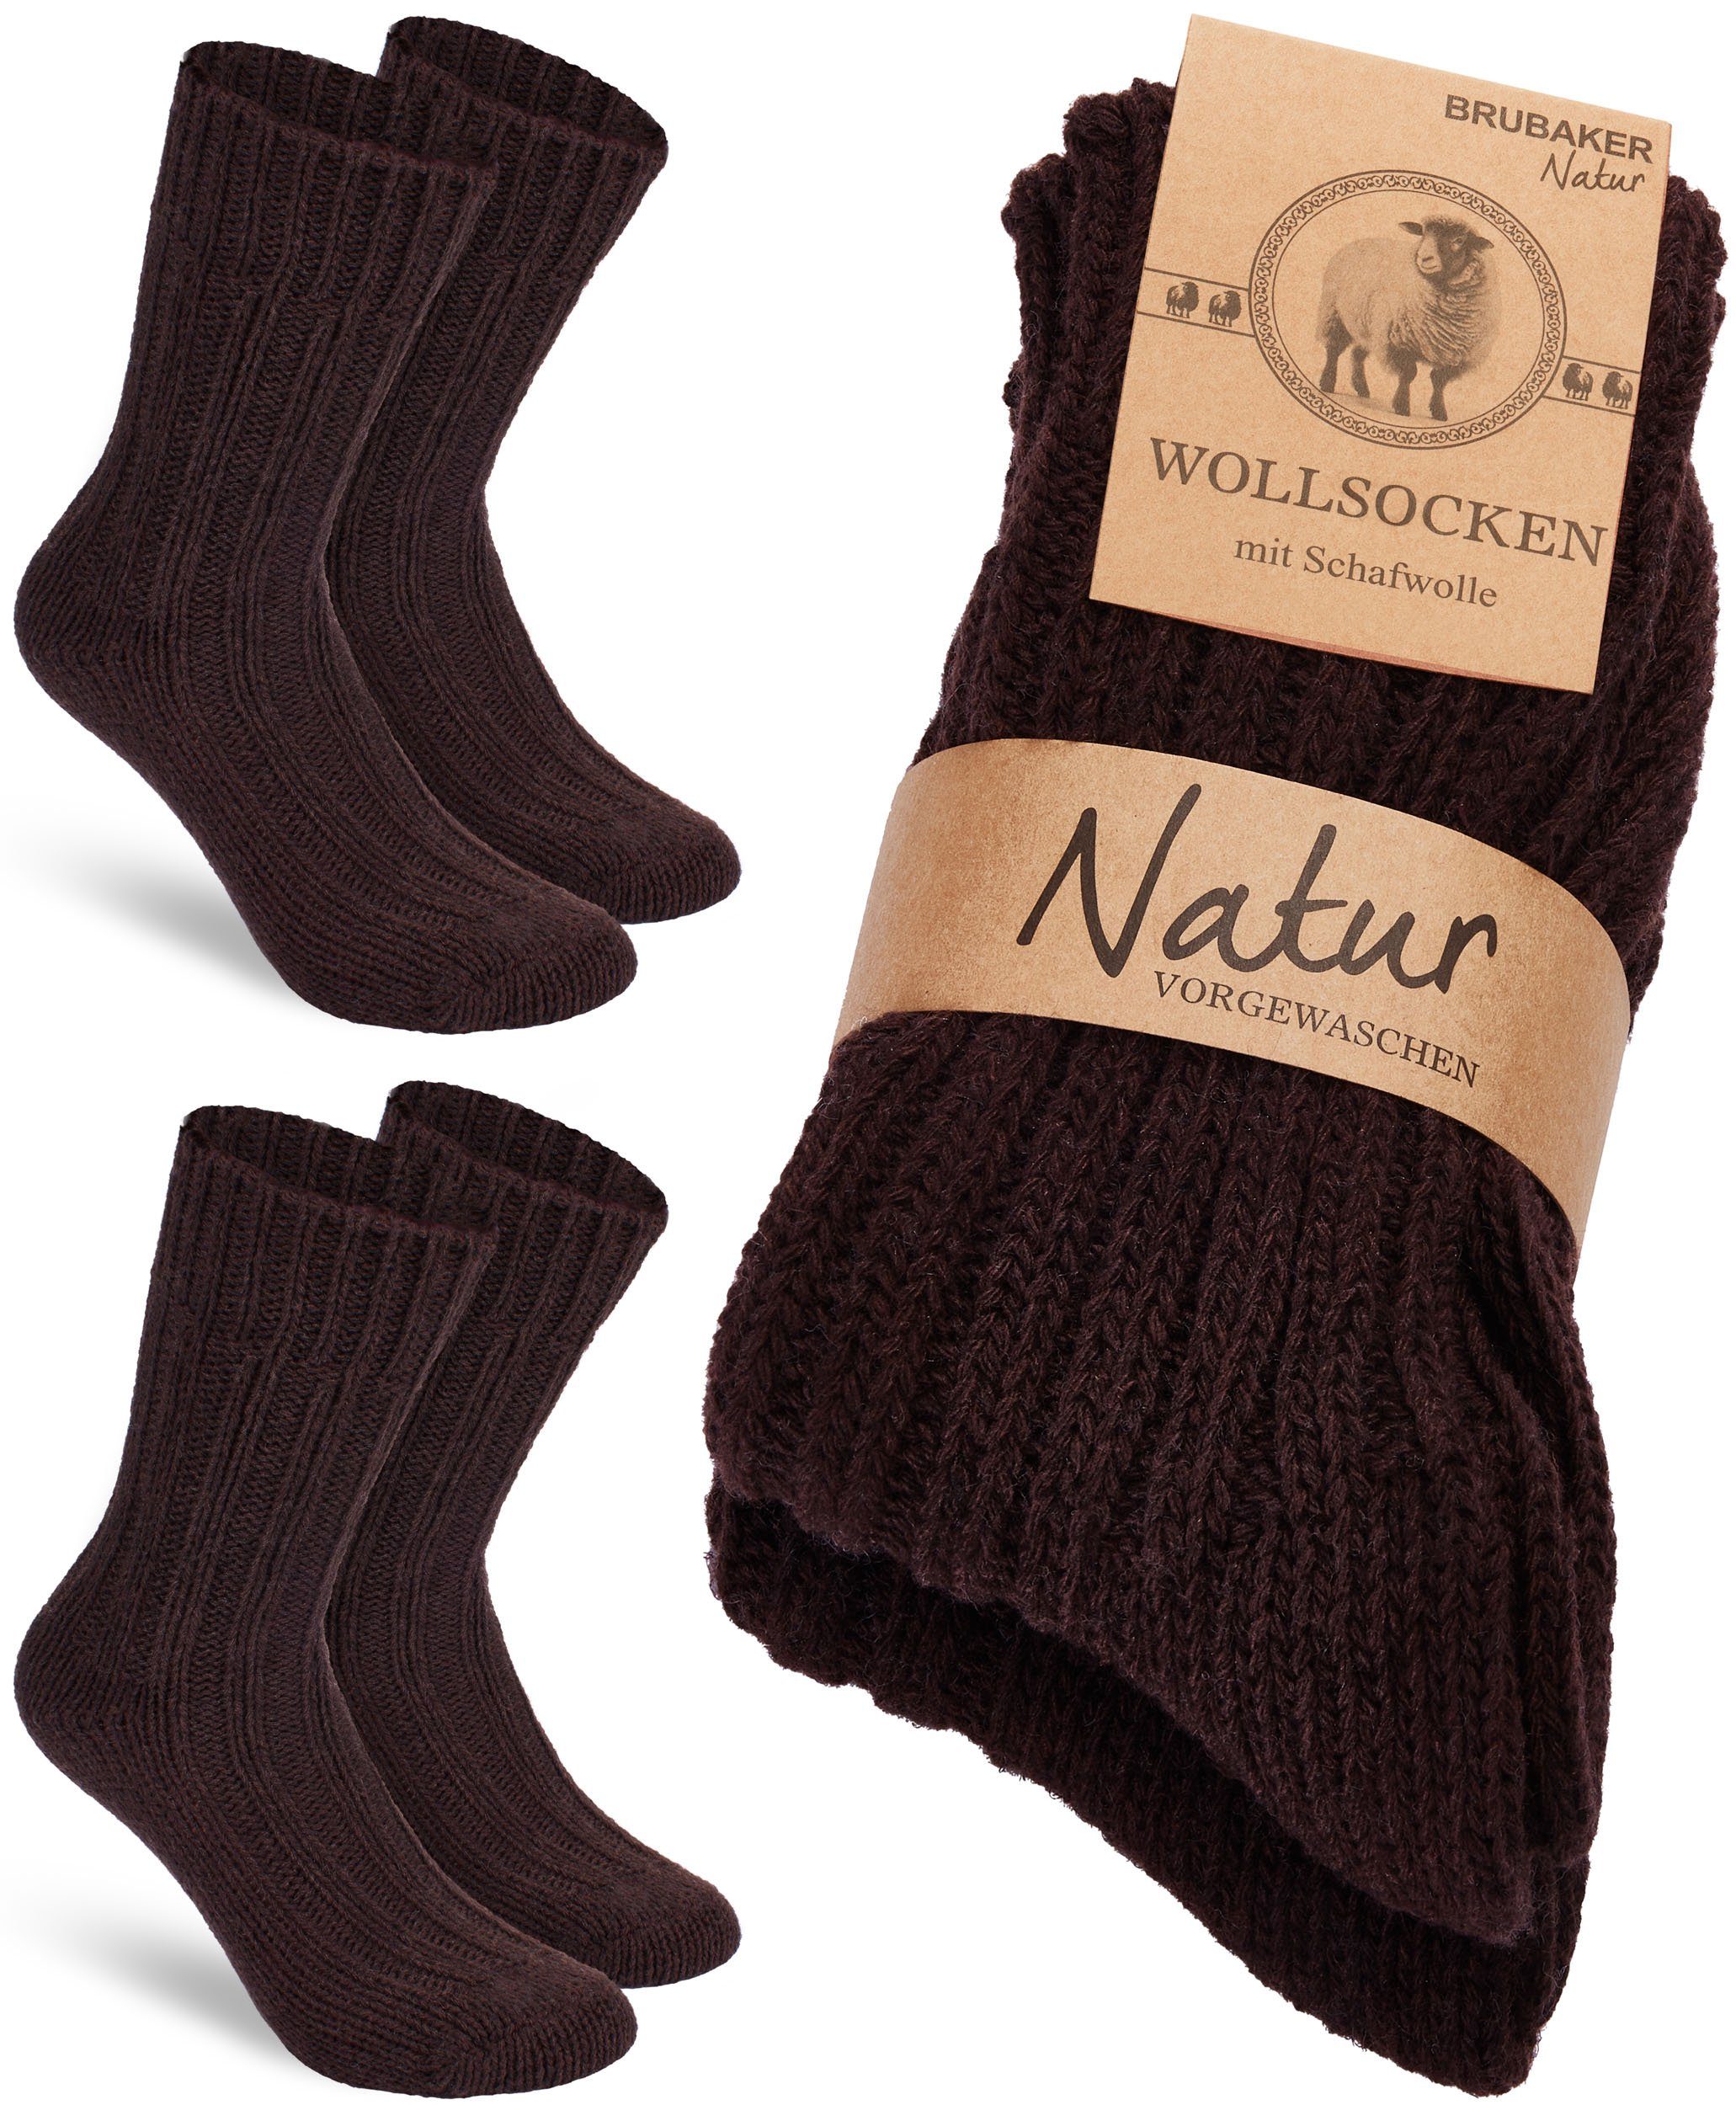 BRUBAKER Socken Wollsocken - Wintersocken für Damen und Herren - Warm und Flauschig (2-Paar) Stricksocken Set mit Schafwolle - Winter Thermosocken Braun